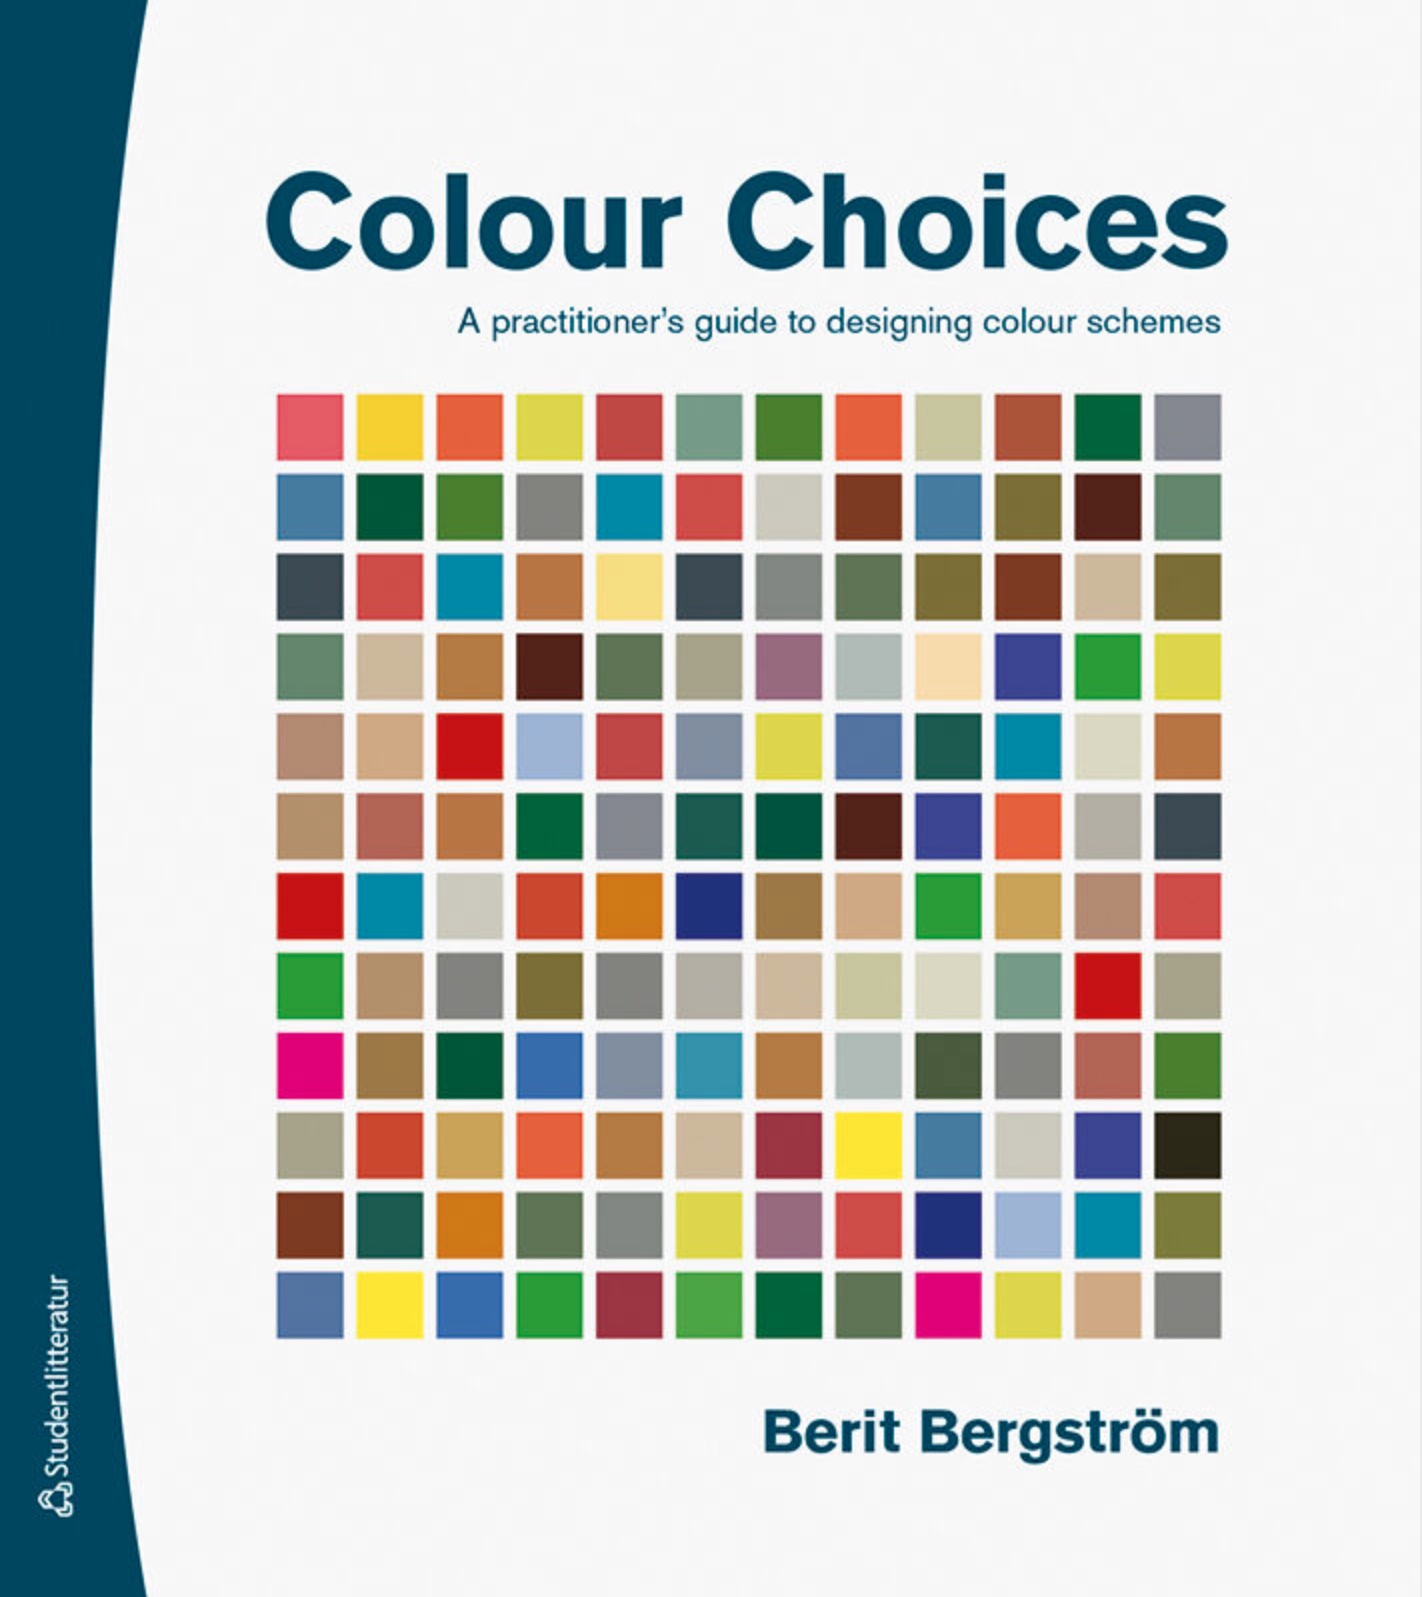 Colour Choices by Berit Bergström